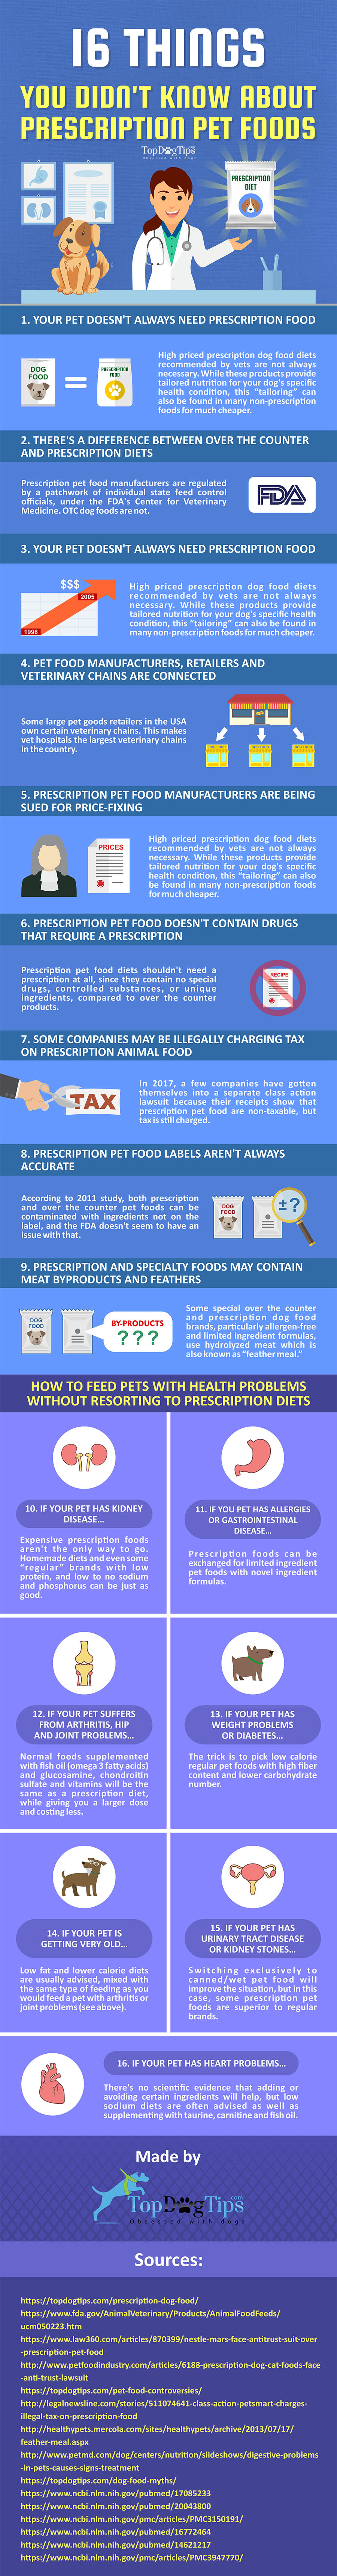 Merken hondenvoer op recept en wat u moet weten